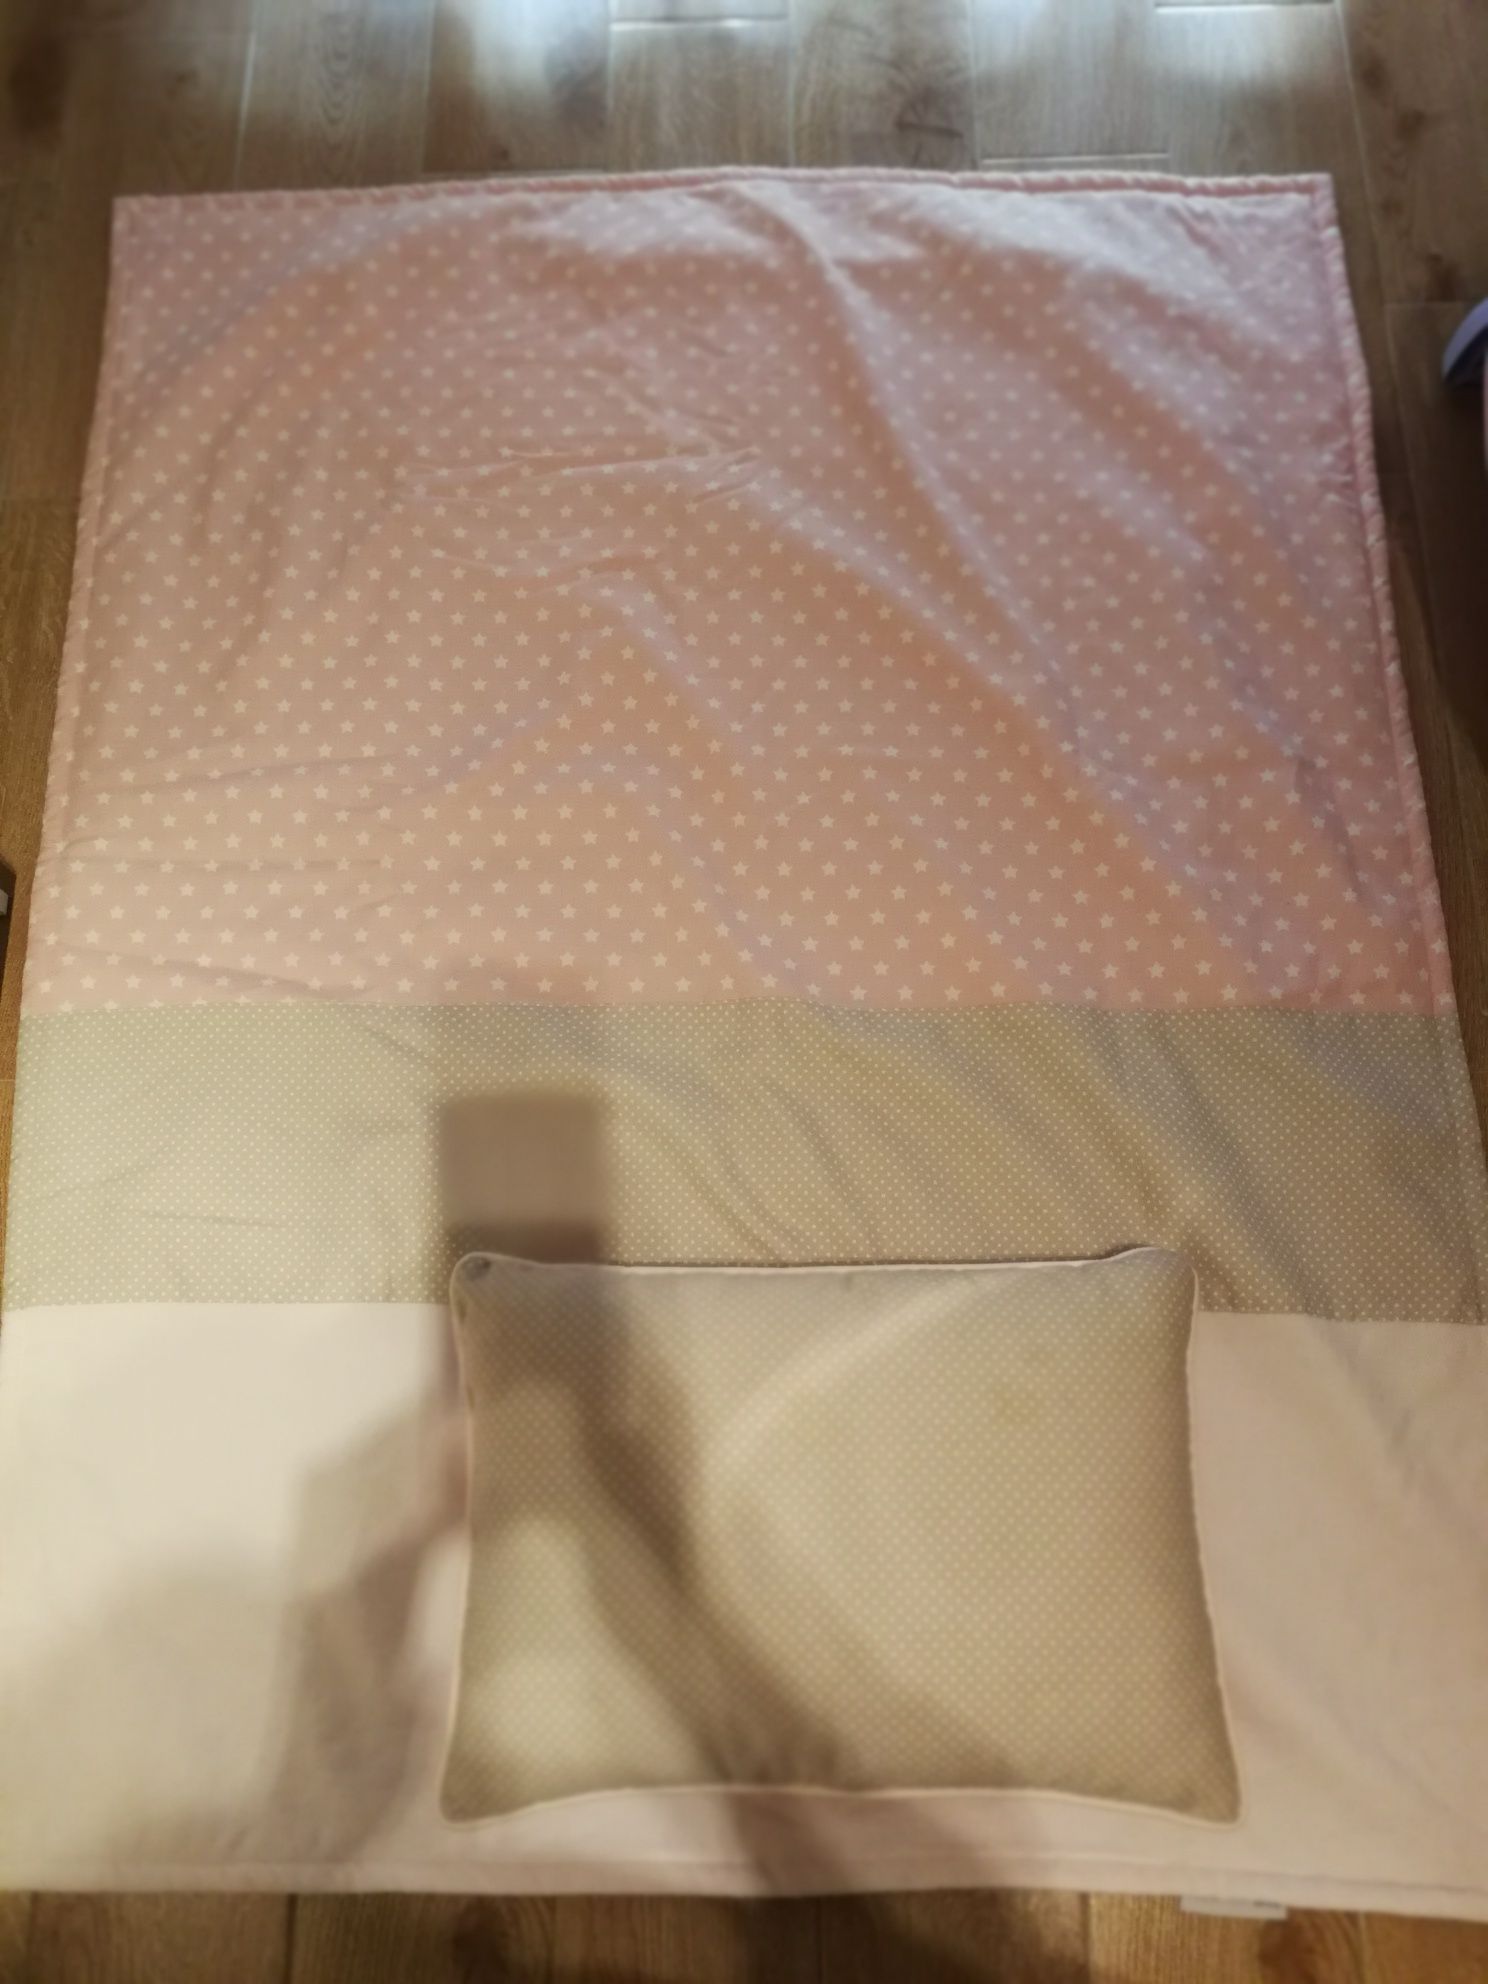 Colcha de cama de grades de menina com proteção lateral